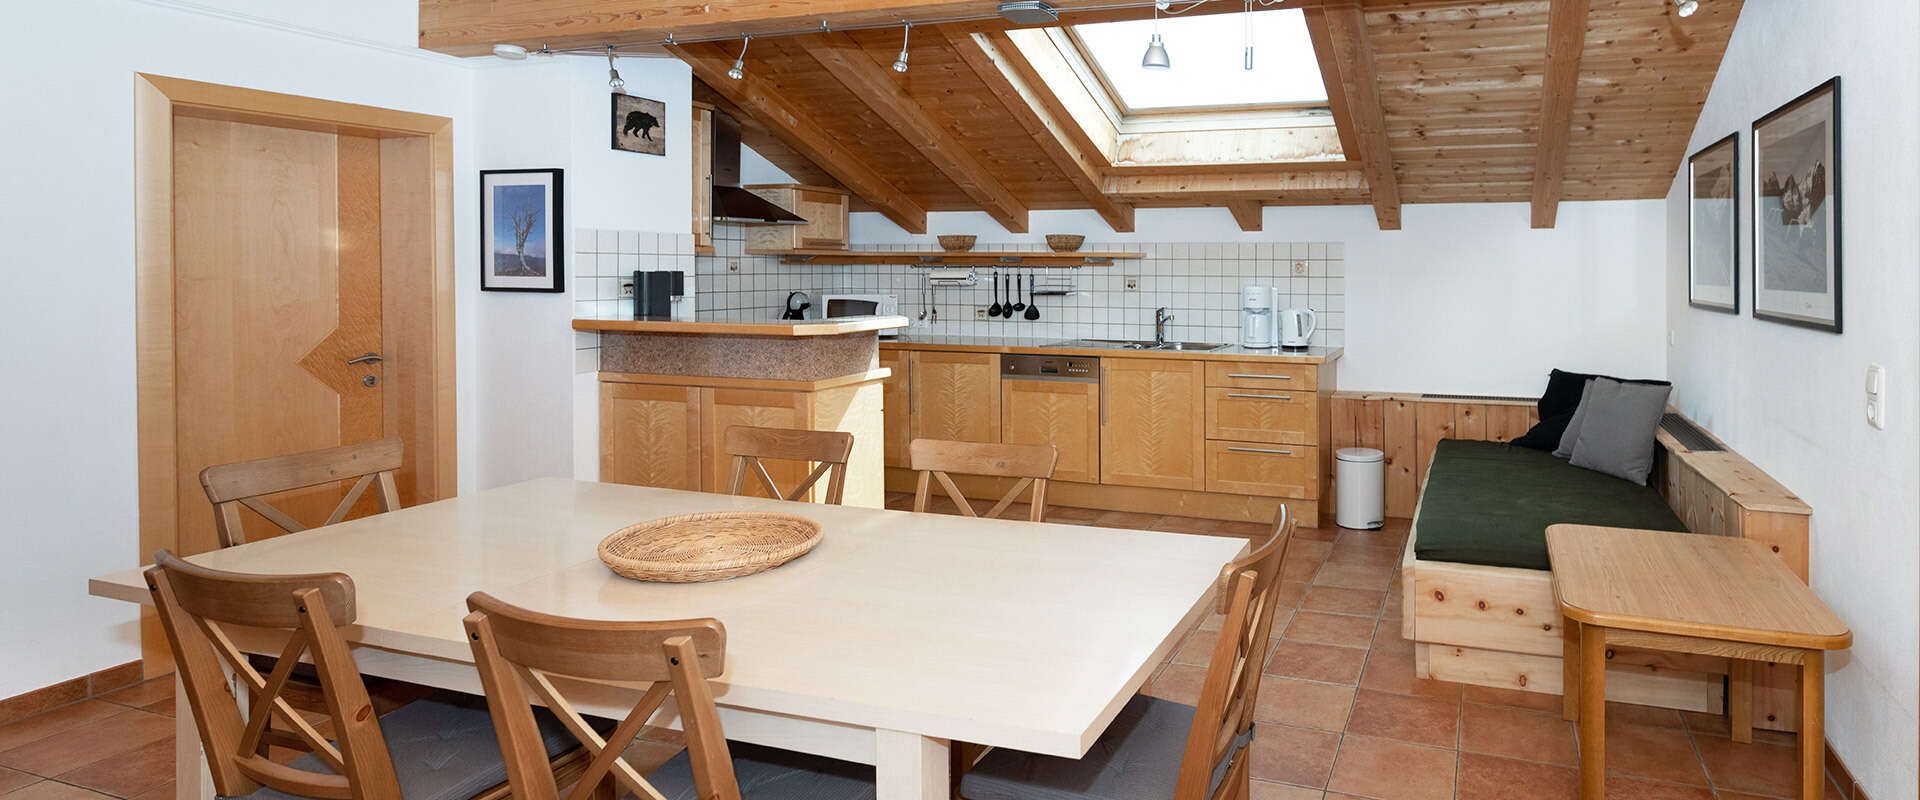 Appartement mit Küche für Urlaub in Tirol